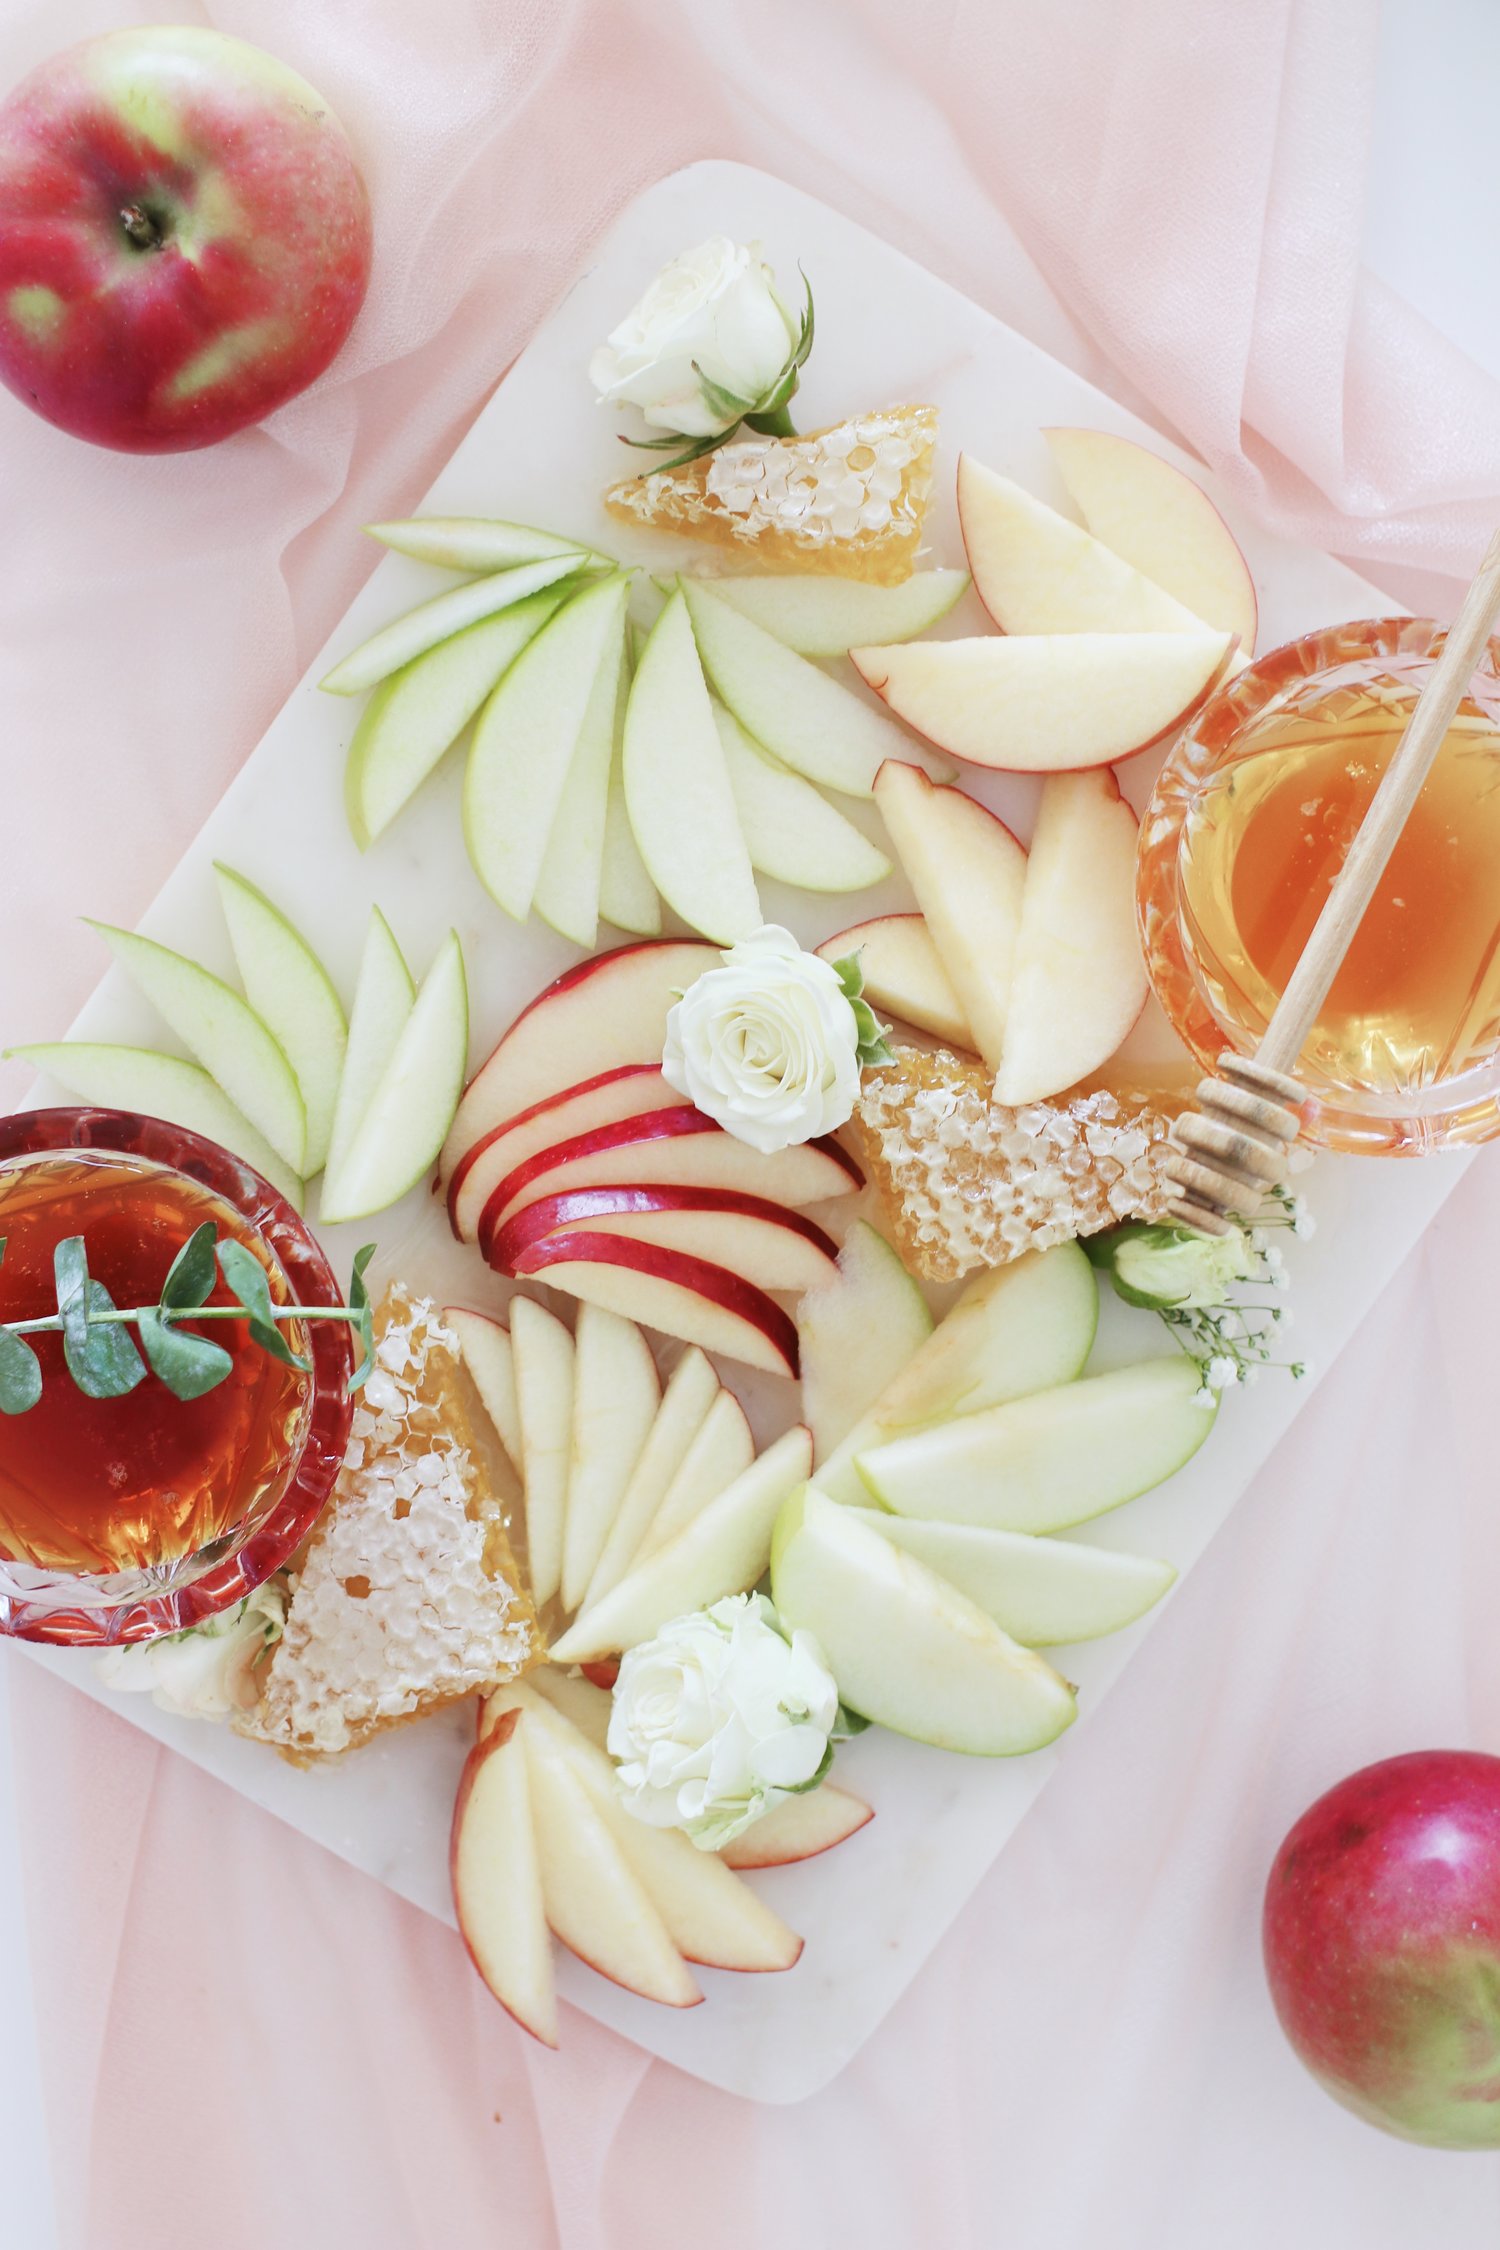 apples-honey-board-for-rosh-hashanah-rebekah-lowin